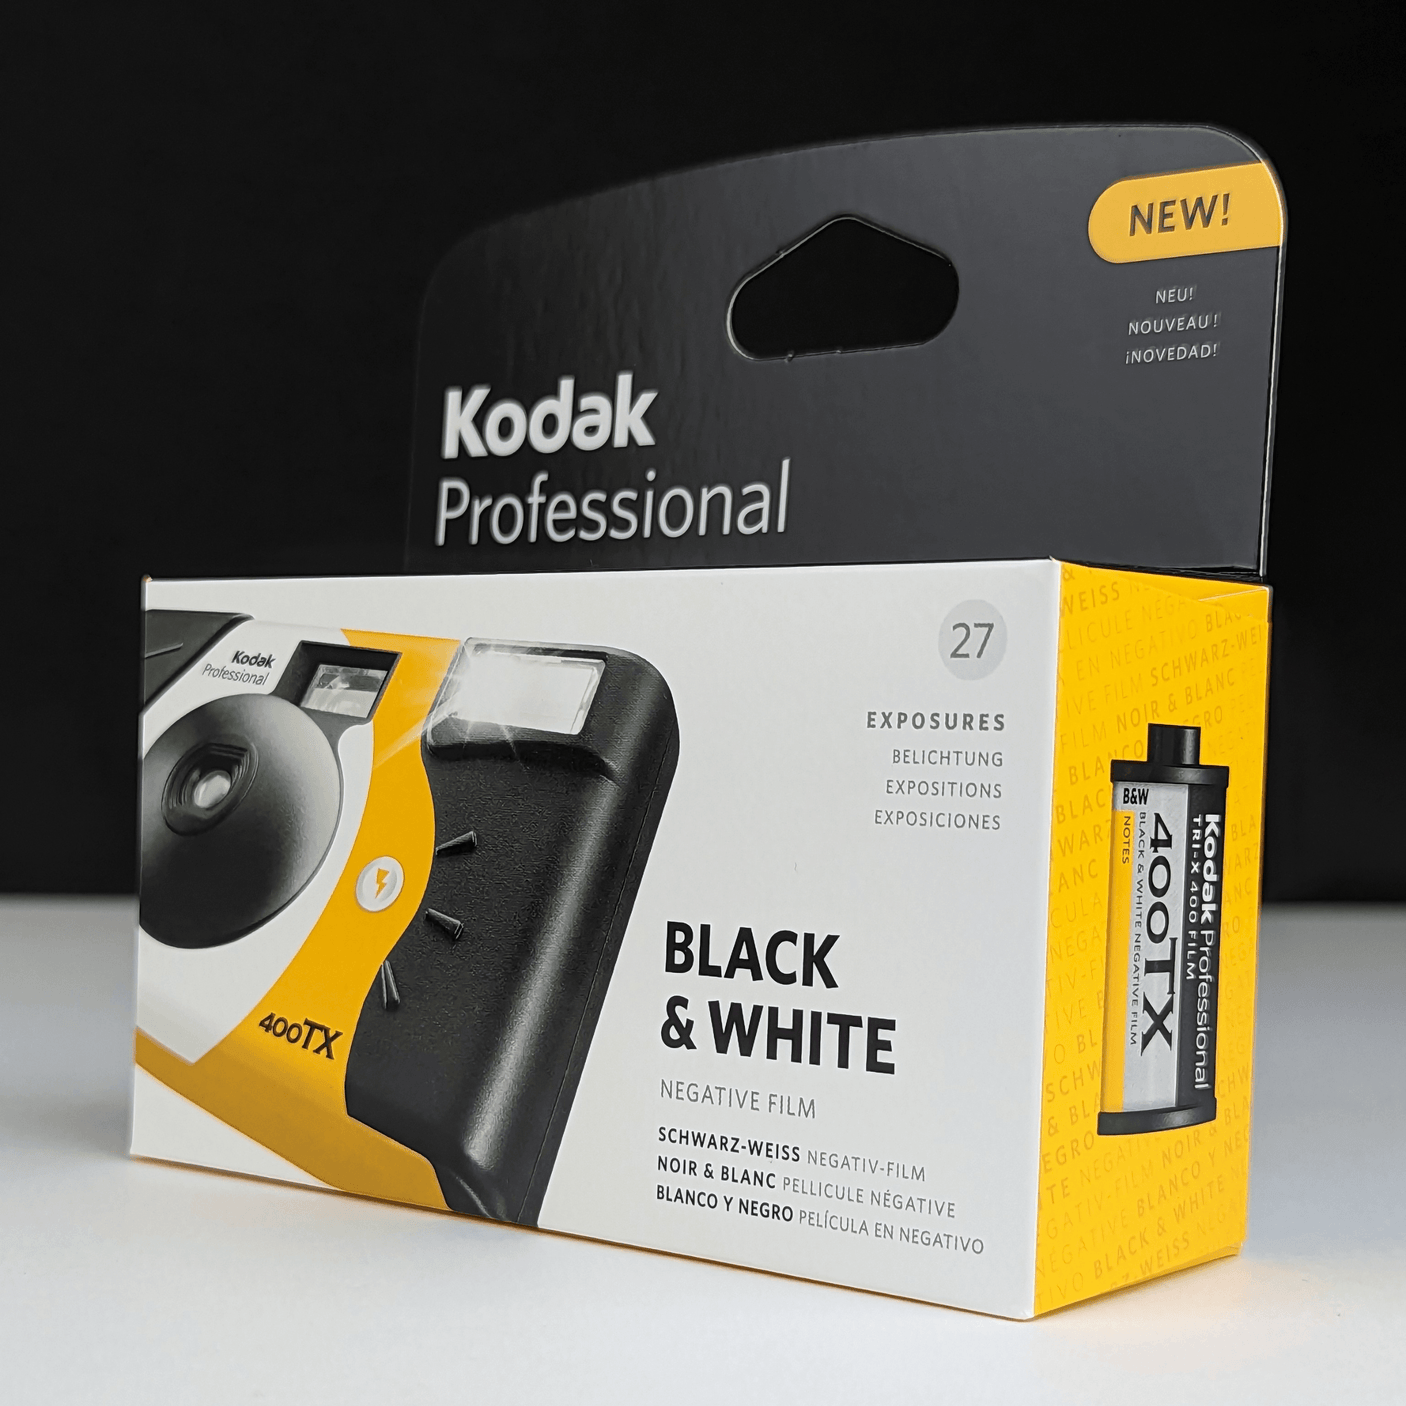 Kodak Professional 400TX B&W 35mm Disposable Film Camera